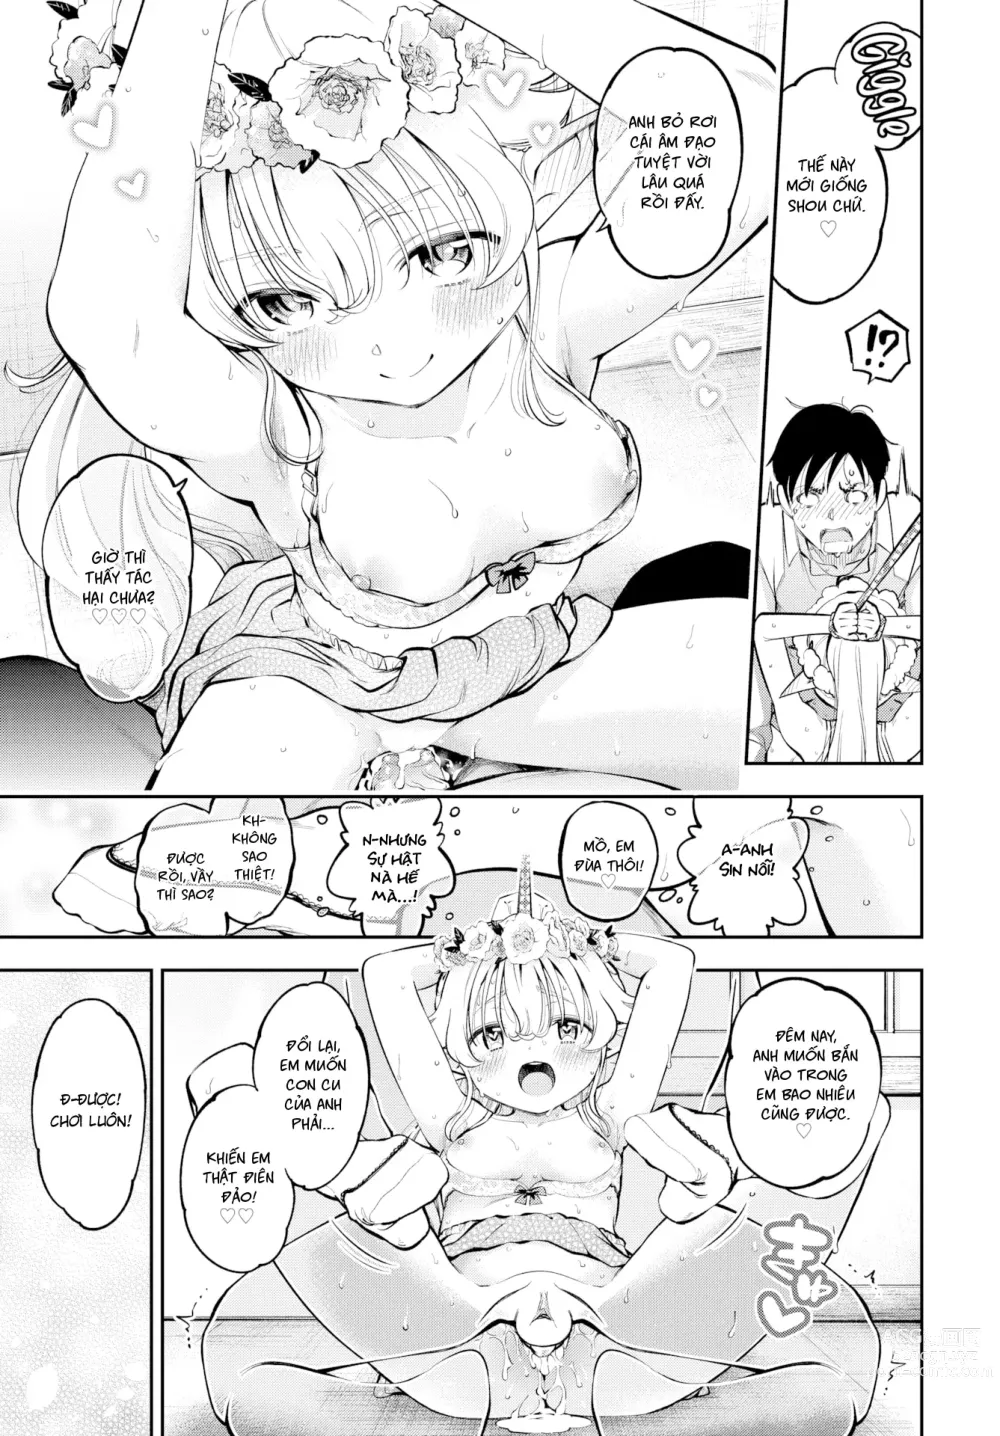 Page 61 of doujinshi Cô Vợ Elf Loli Đã 2̶0̶9̶